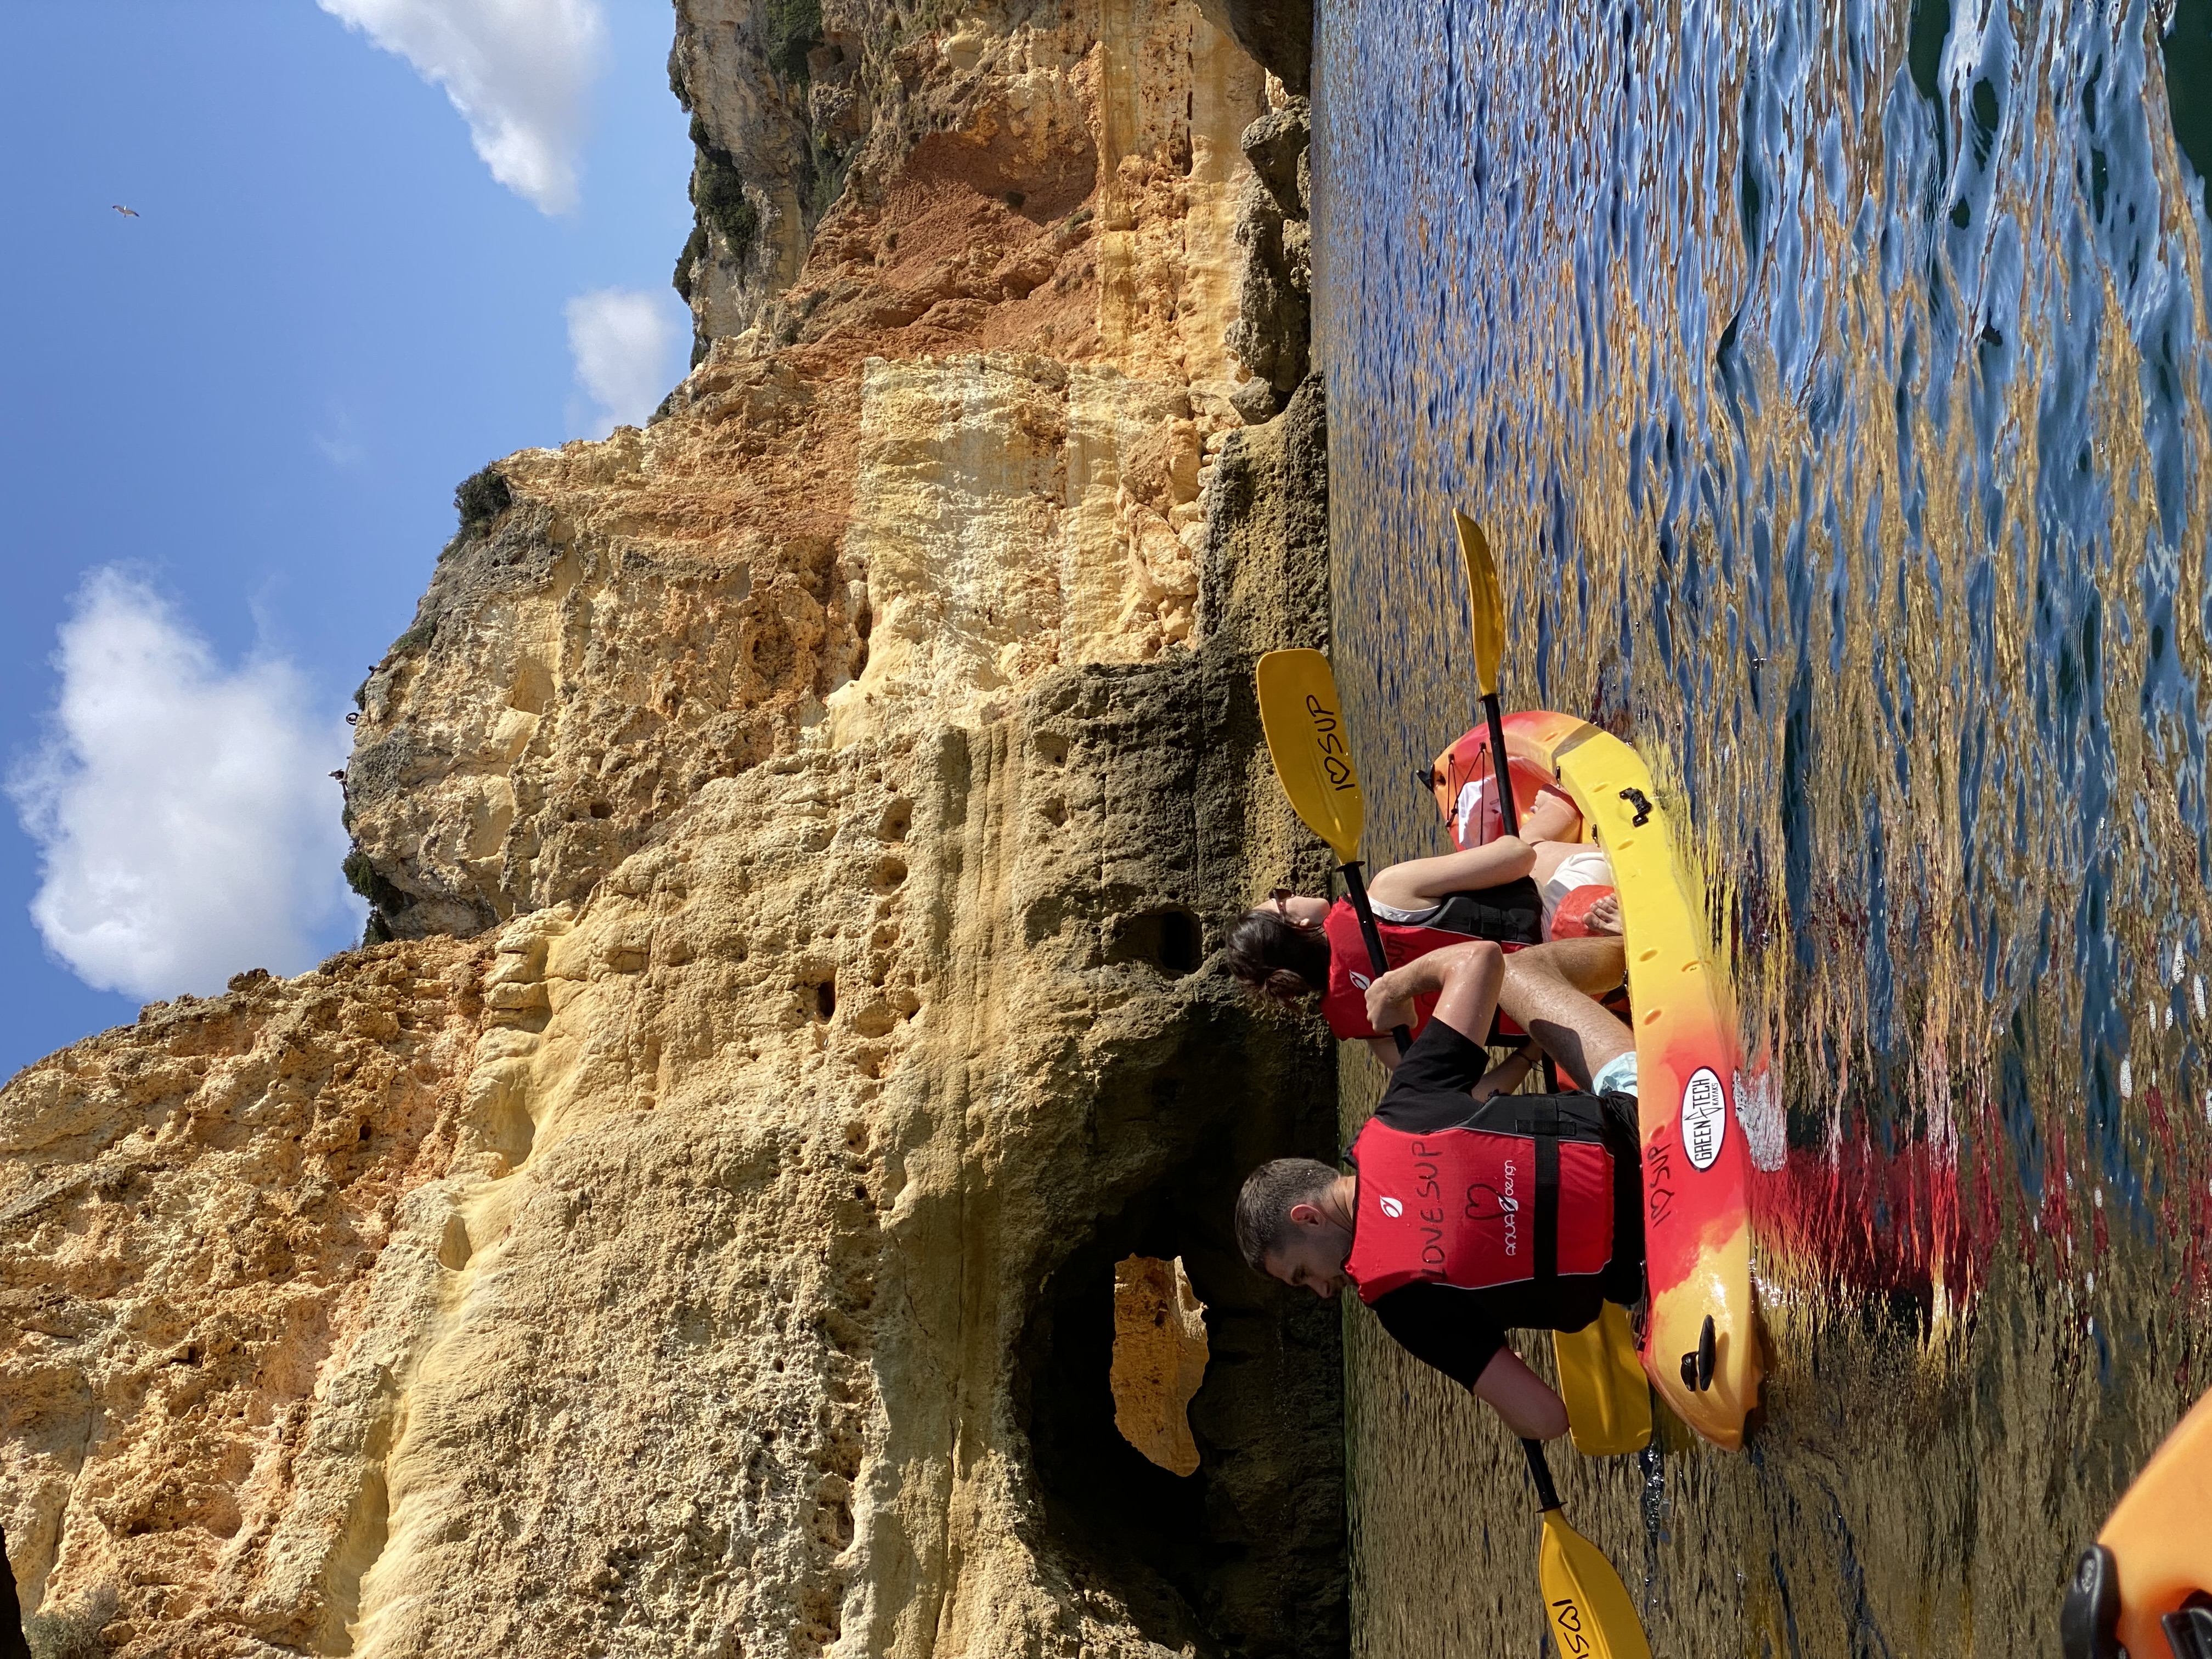 Benagil cave kayak tour